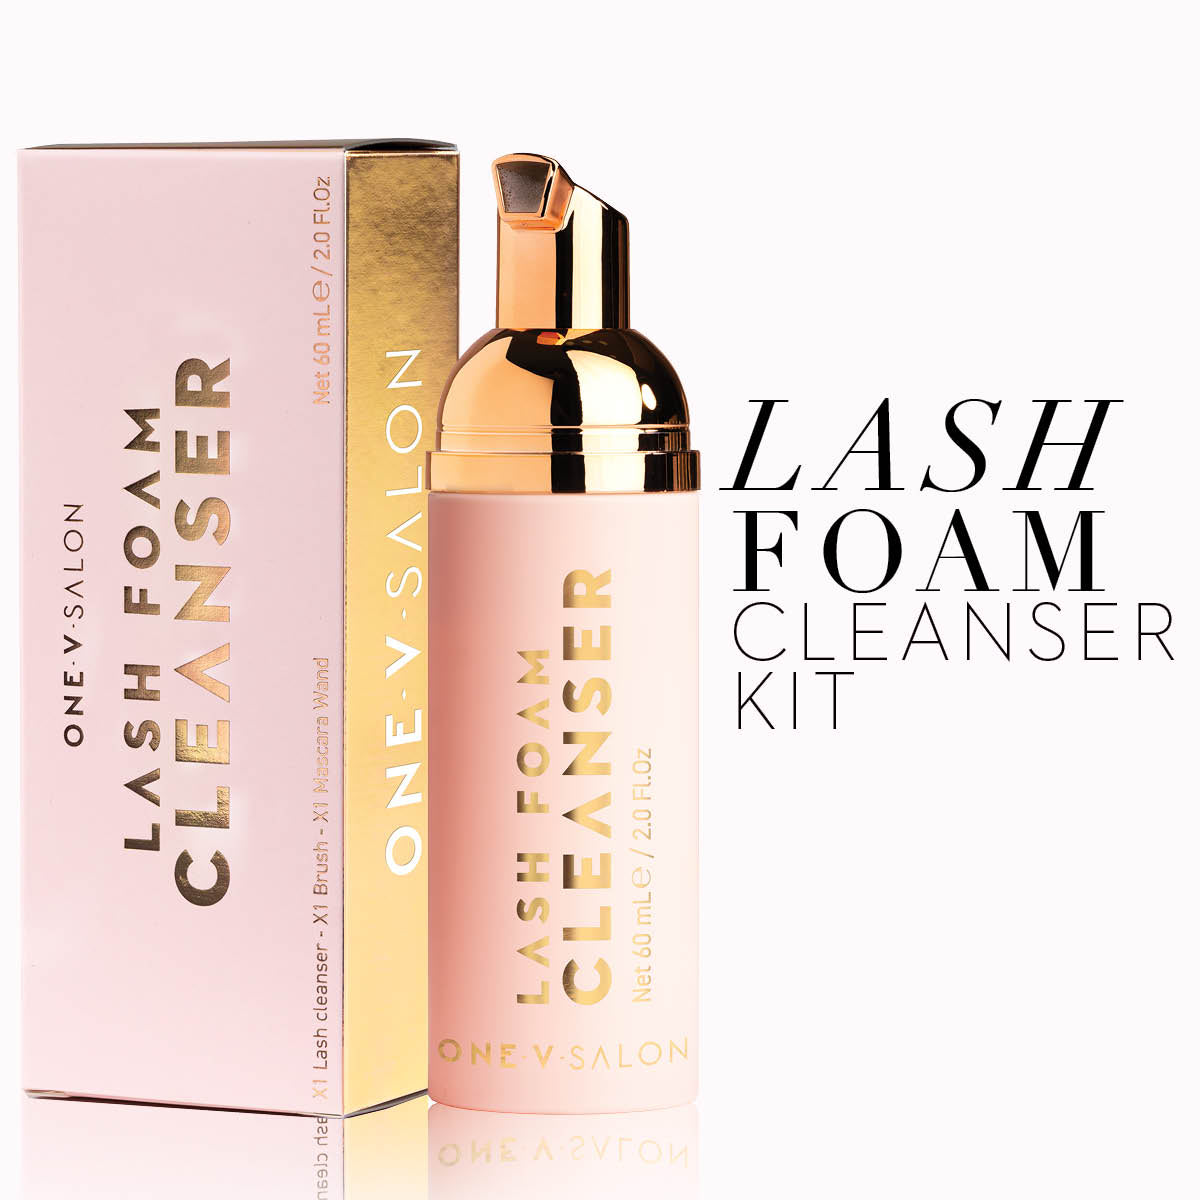 Lash Foam Cleanser Kit - (Bundle Packs) - Lash cleanser + Lash Brush + Mascara Wand - LASH V